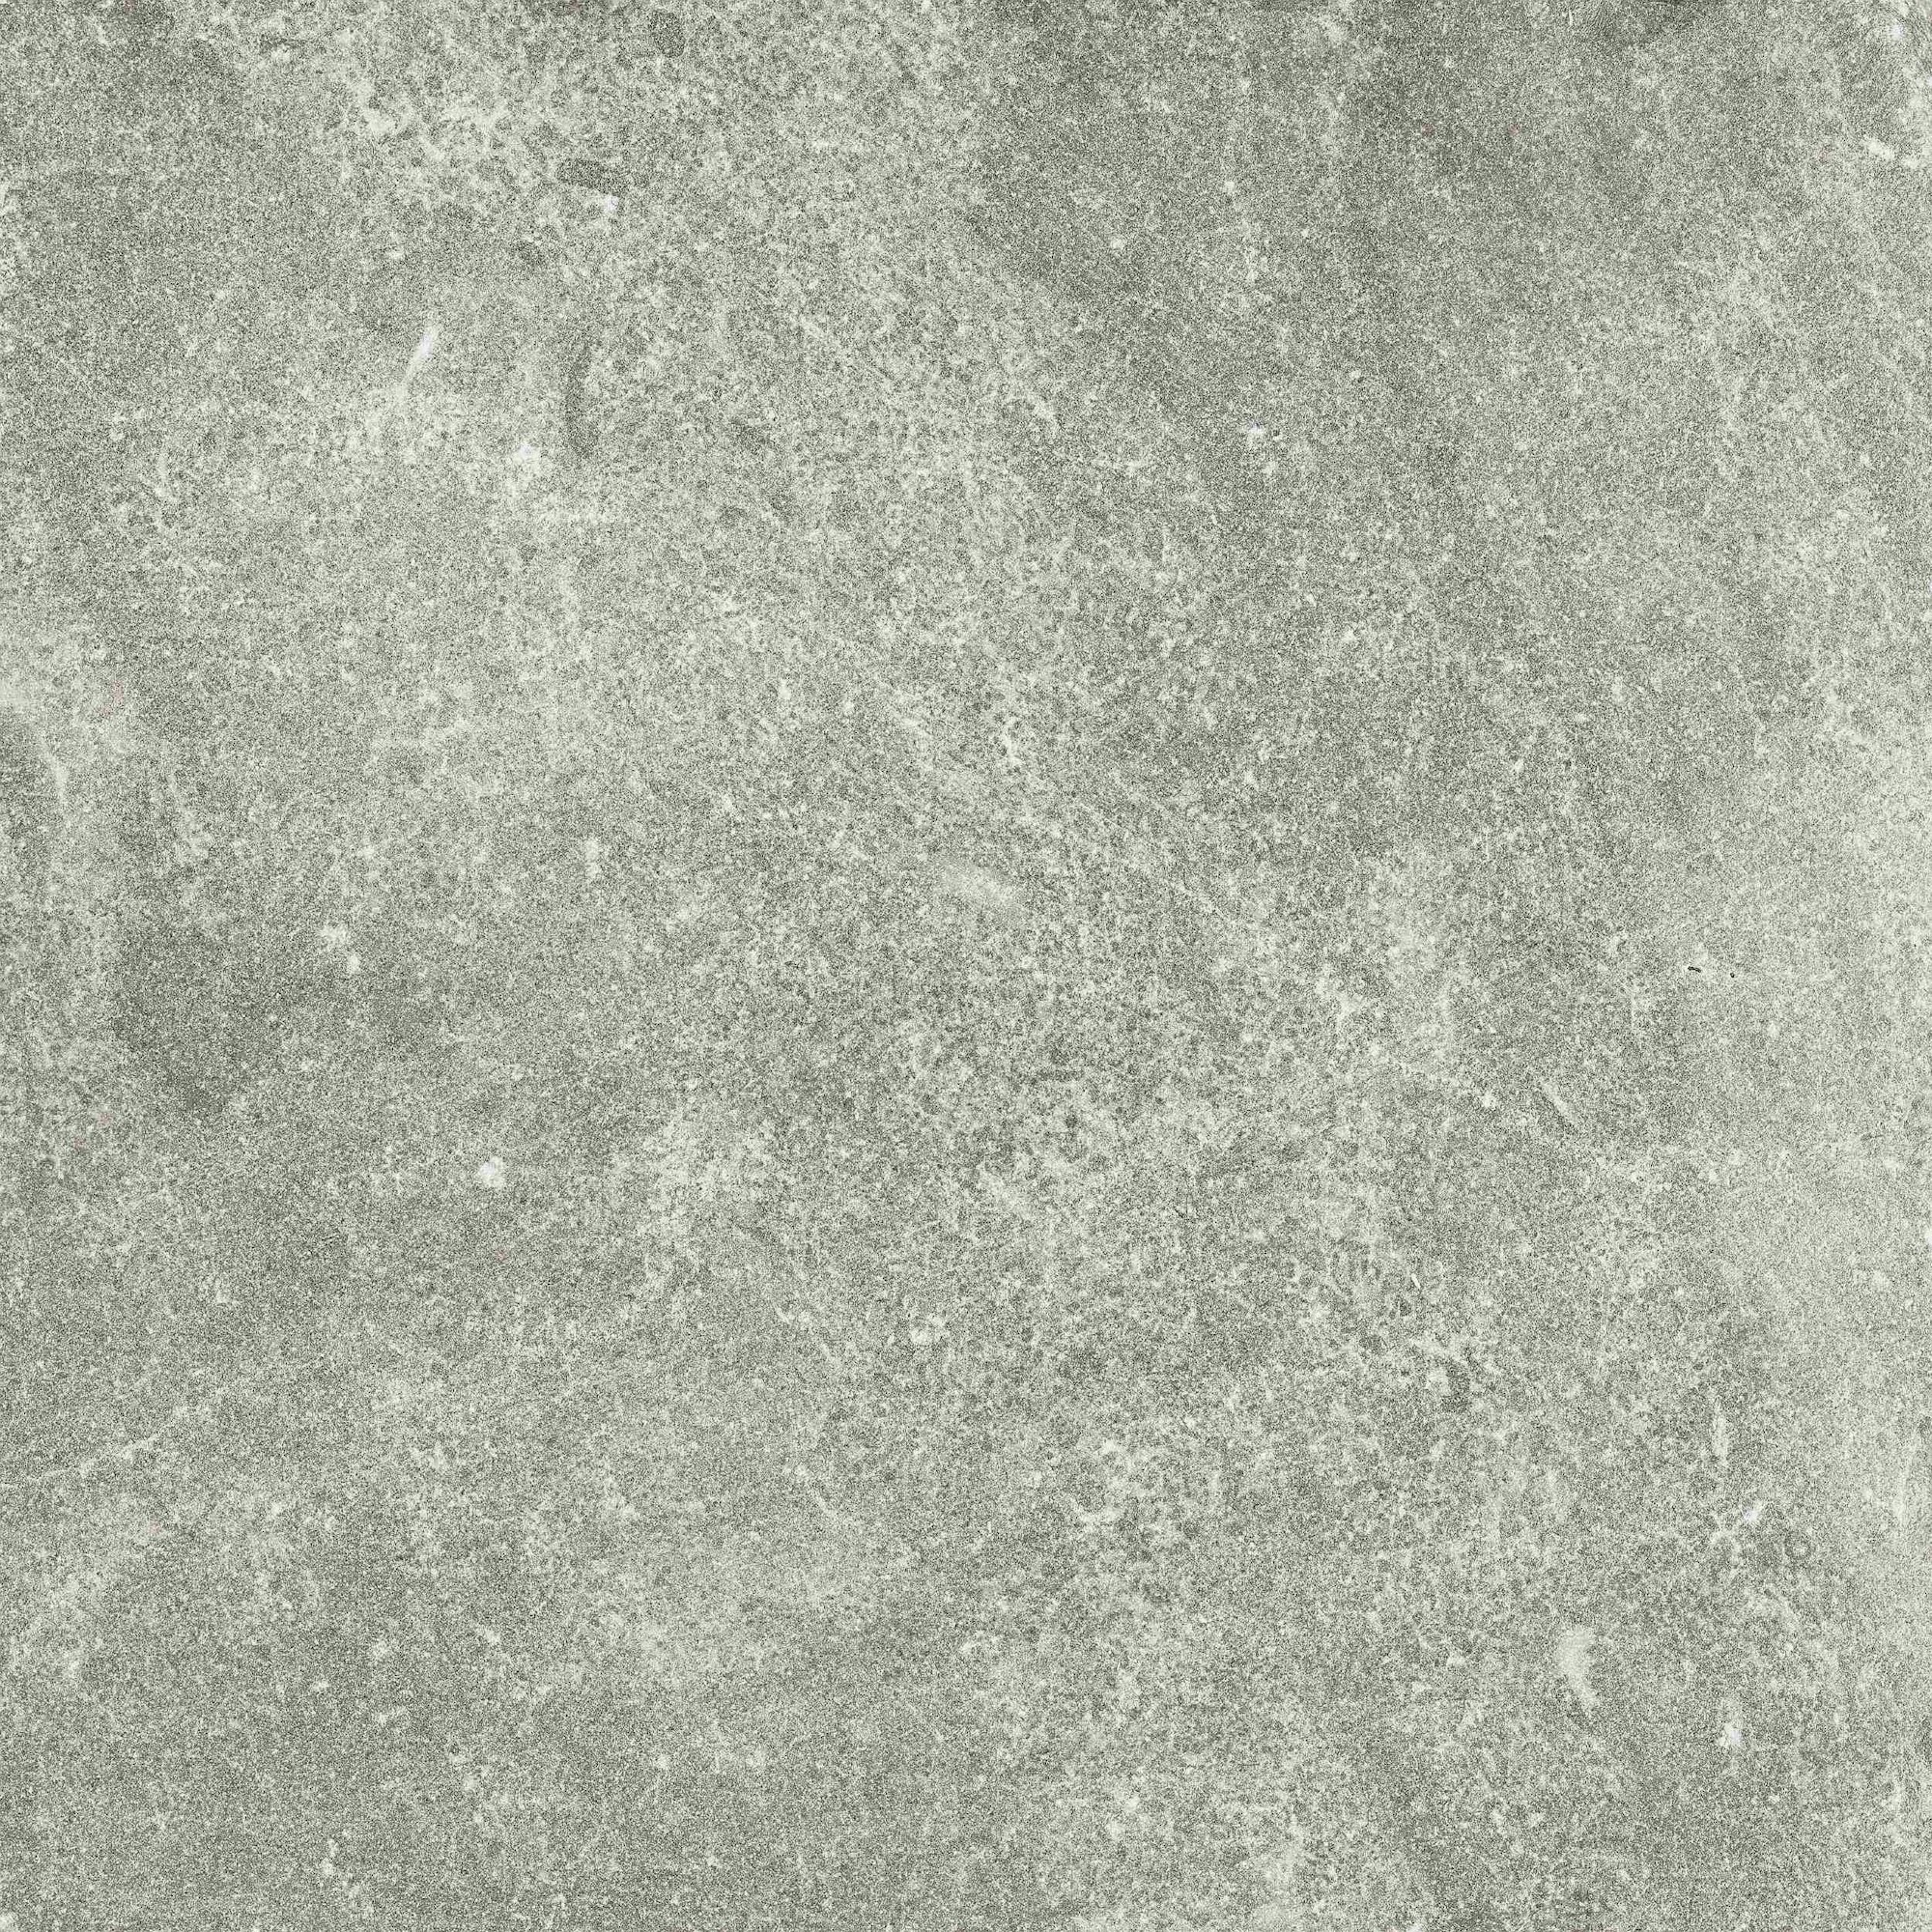 Eternal Grey 600x600x20mm Outdoor Tile